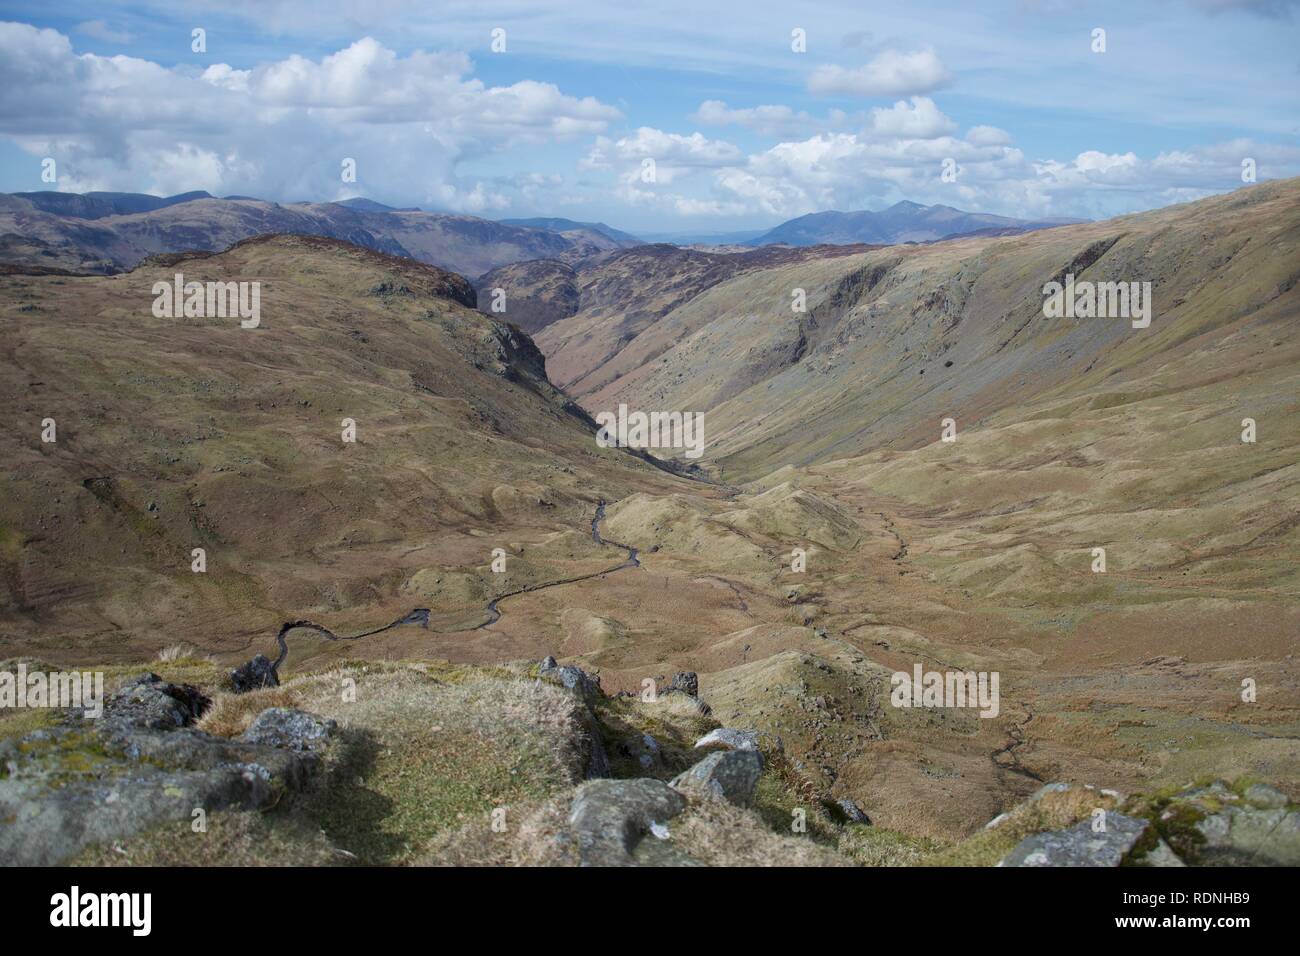 Ausblick In einem sumpfigen Tal, von einem fiel im englischen Lake District (Cumbria, UK). Felsen im Vordergrund und einem mäandernden Stream/riv Stockfoto